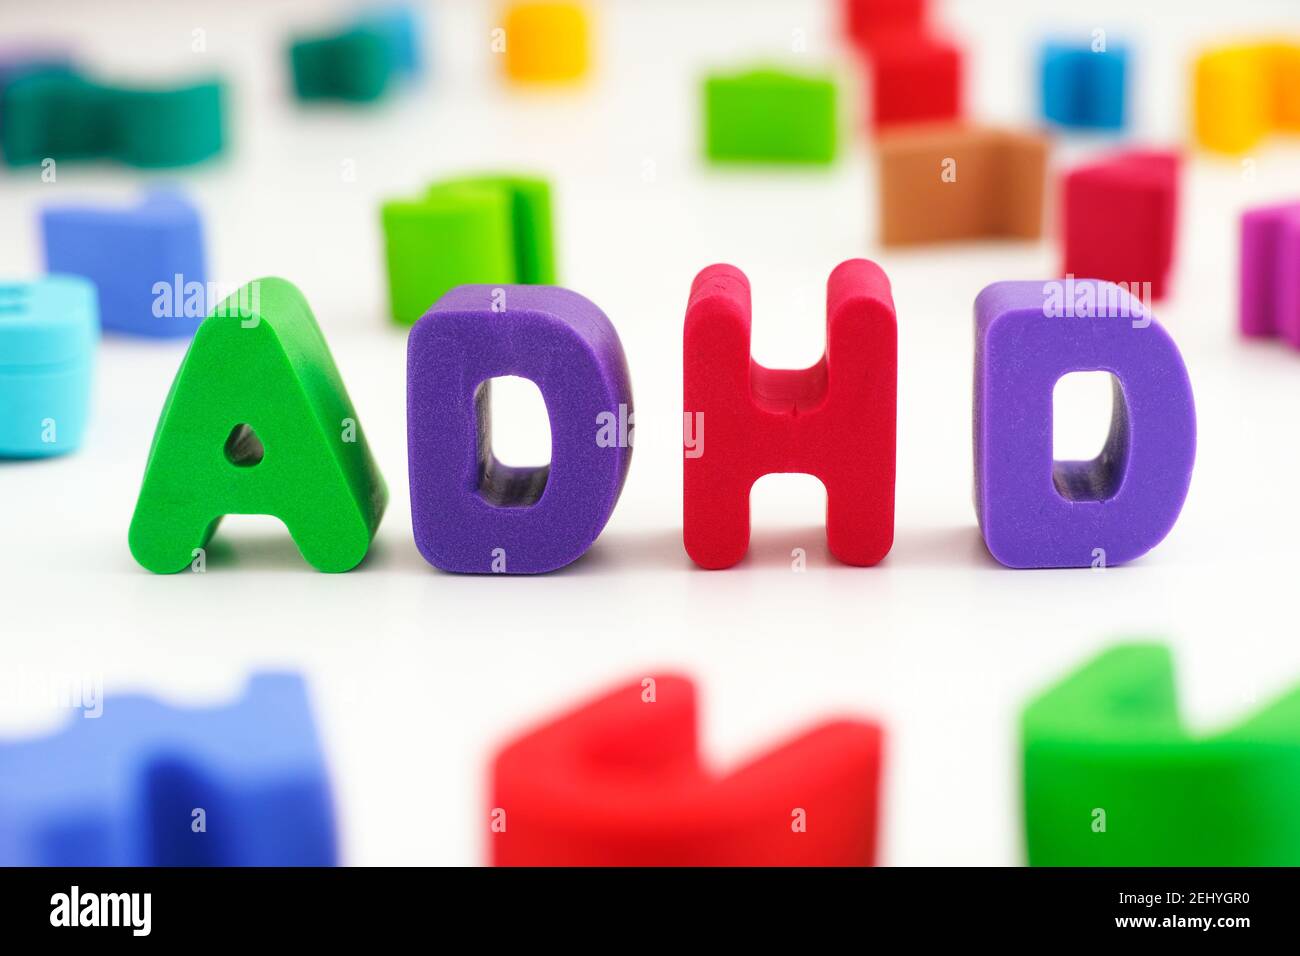 TDAH. La abreviatura ADHD hecha de letras de arcilla de polímero. De cerca. El TDA/H es un trastorno por déficit de atención e hiperactividad. Foto de stock